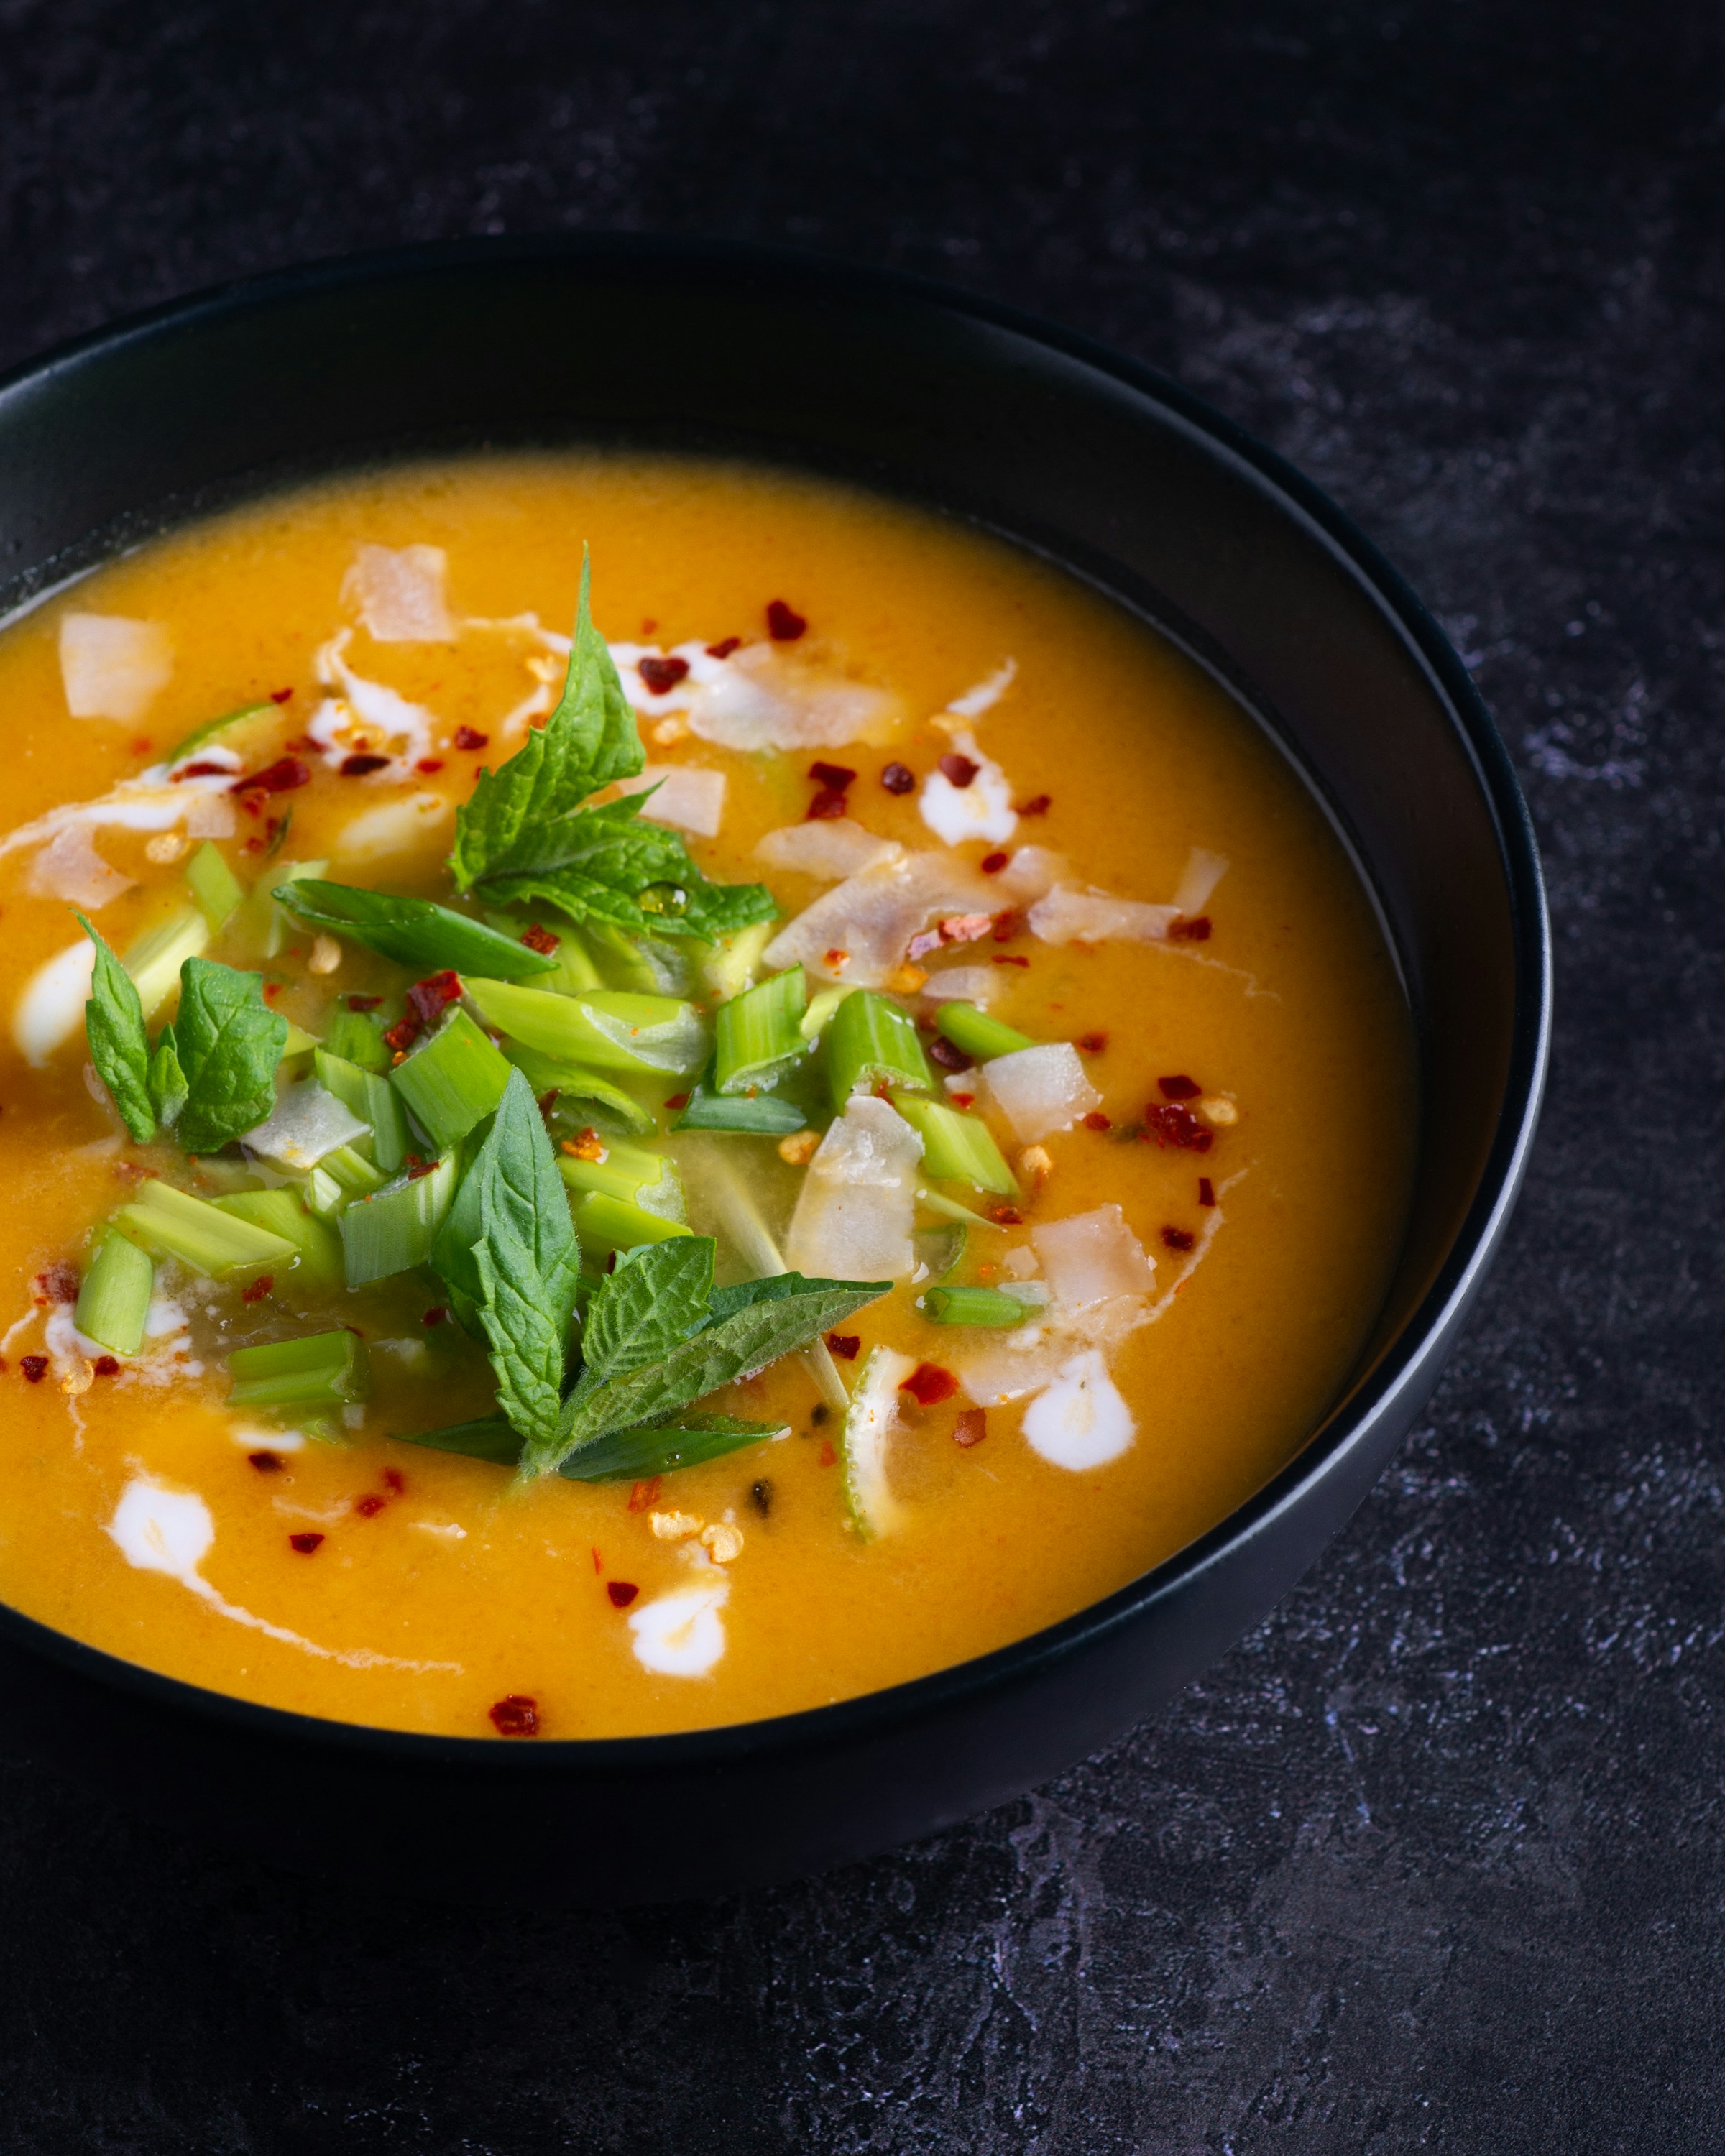 Un bol de soupe avec des légumes frais | Source : Unsplash